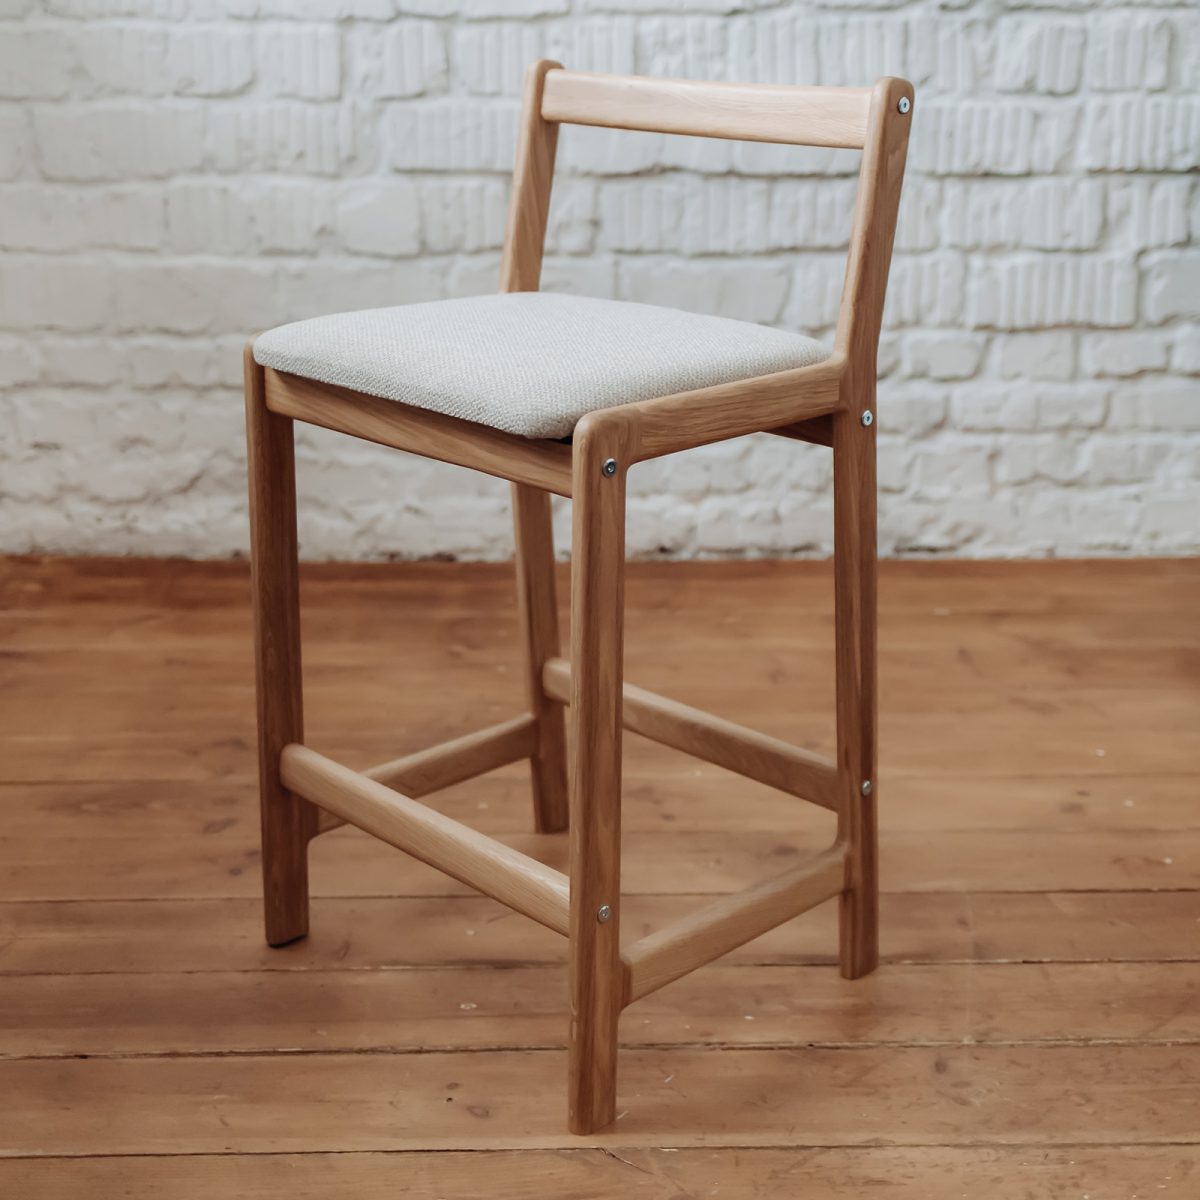 Барный стул со спинкой, мягкое сиденье — натуральный дуб